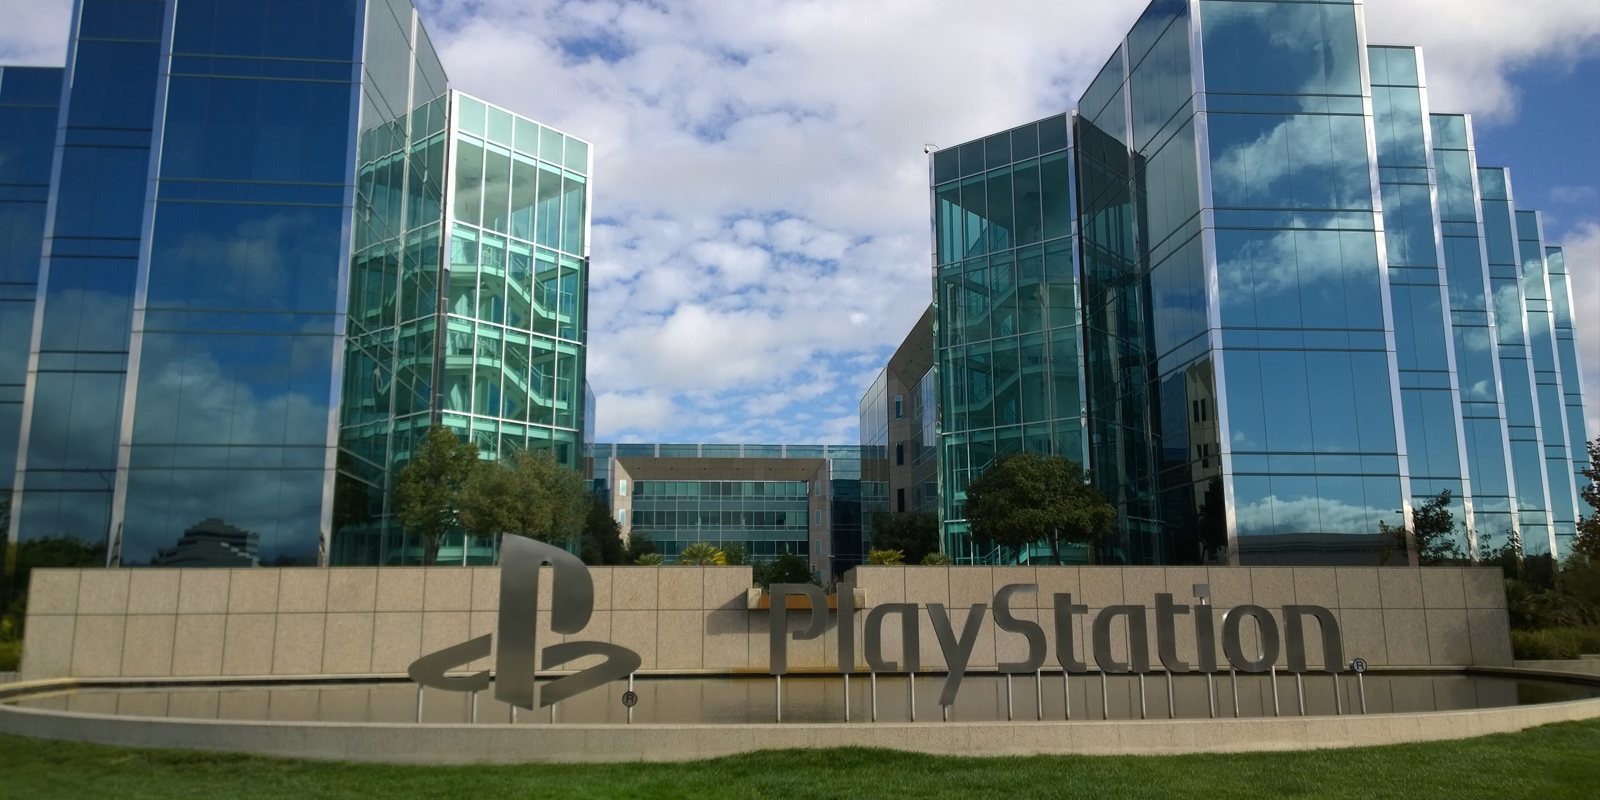 El cuartel general de PlayStation se mantendrá en Londres